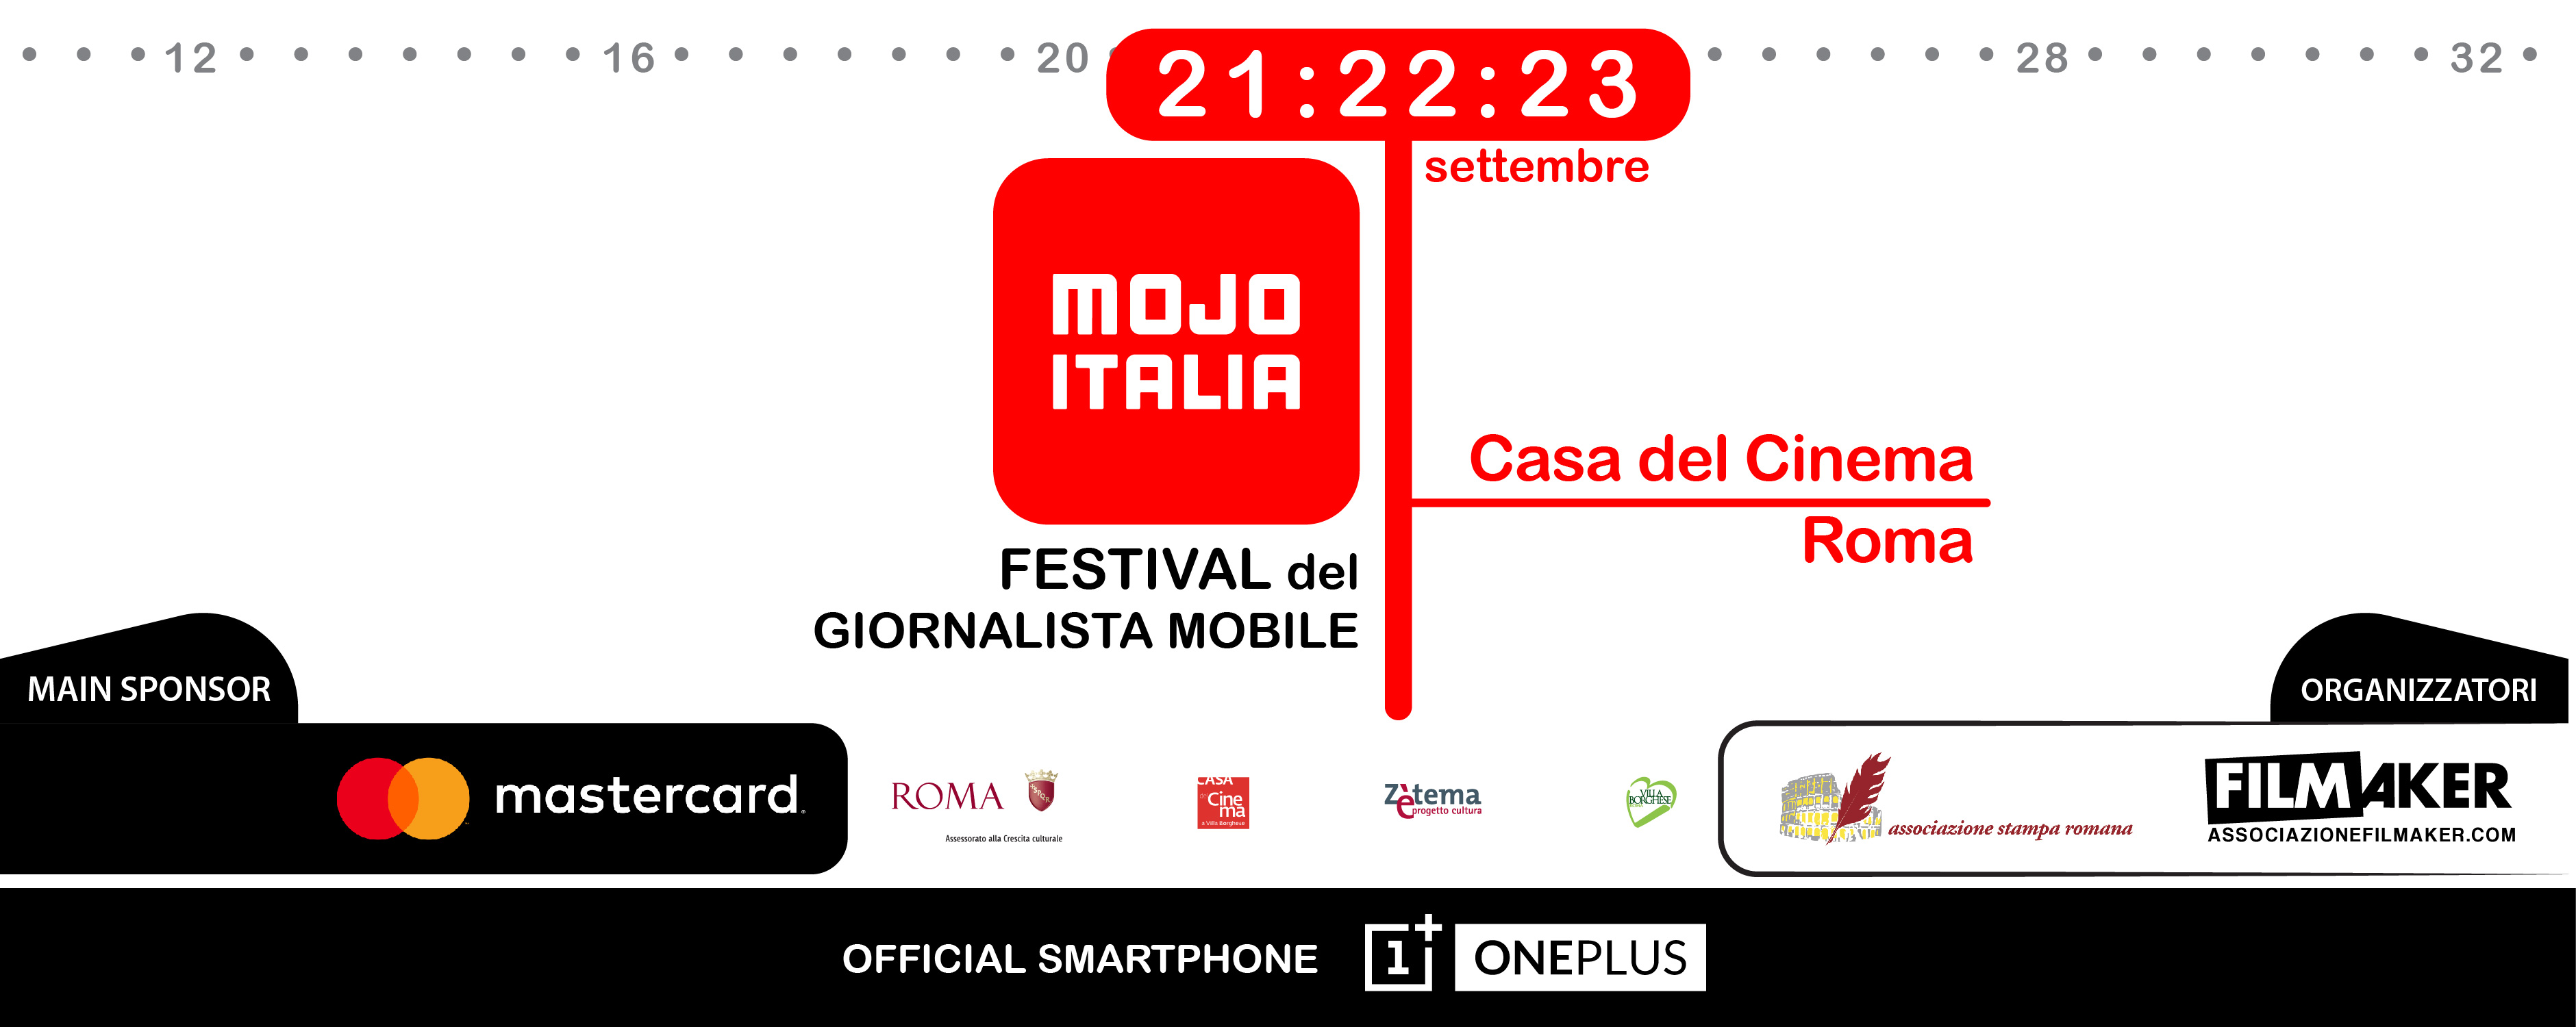 Il CoRiS al MOJO, il primo festival italiano di Mobile journalism